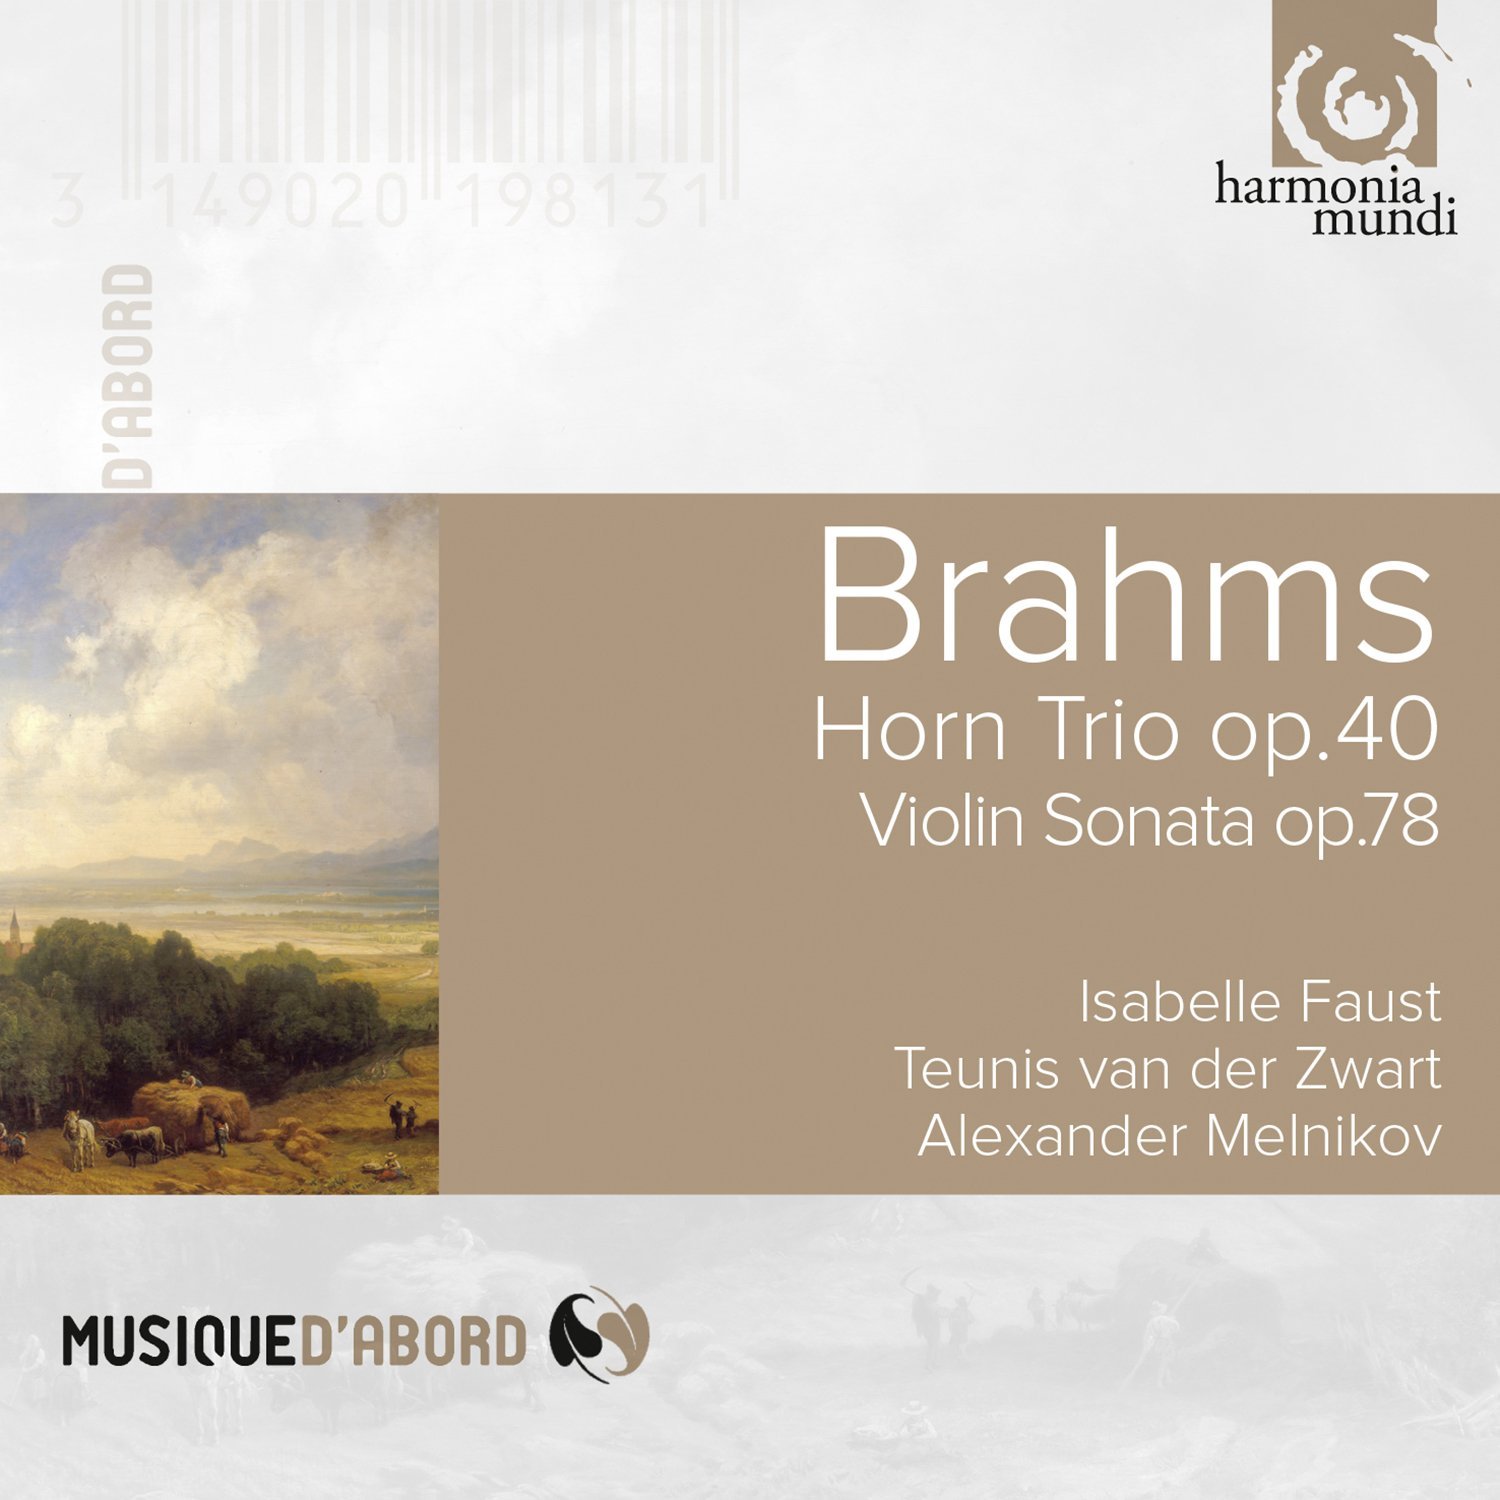 Brahms: Horn Trio Op.40 -Violin Sonata Op.78 - Fantasies Op.116 | Teunis van der Zwart, Isabelle Faust, Alexander Melnikov, Johanne Brams